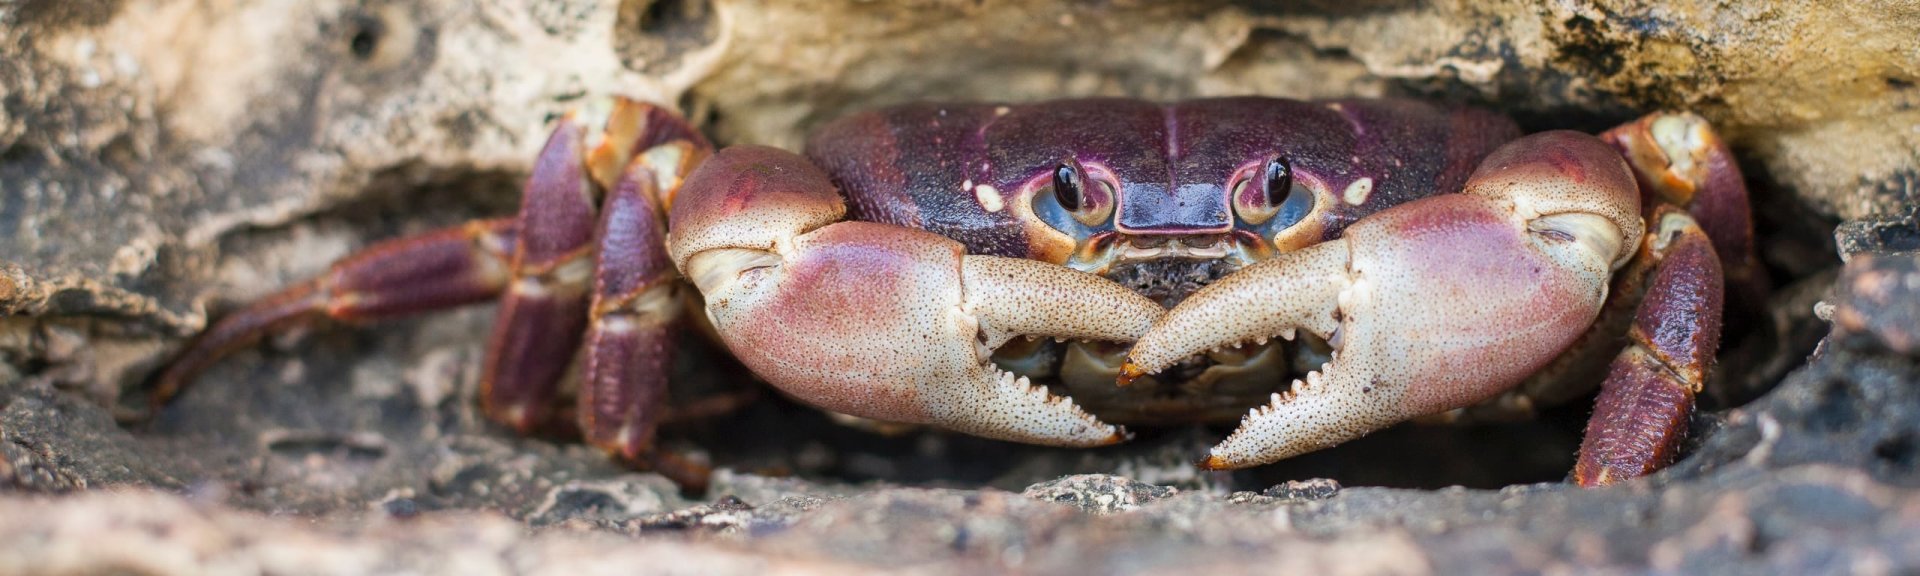 Purple crab. Photo: [Wondrous World Images](https://www.wondrousworldimages.com.au)